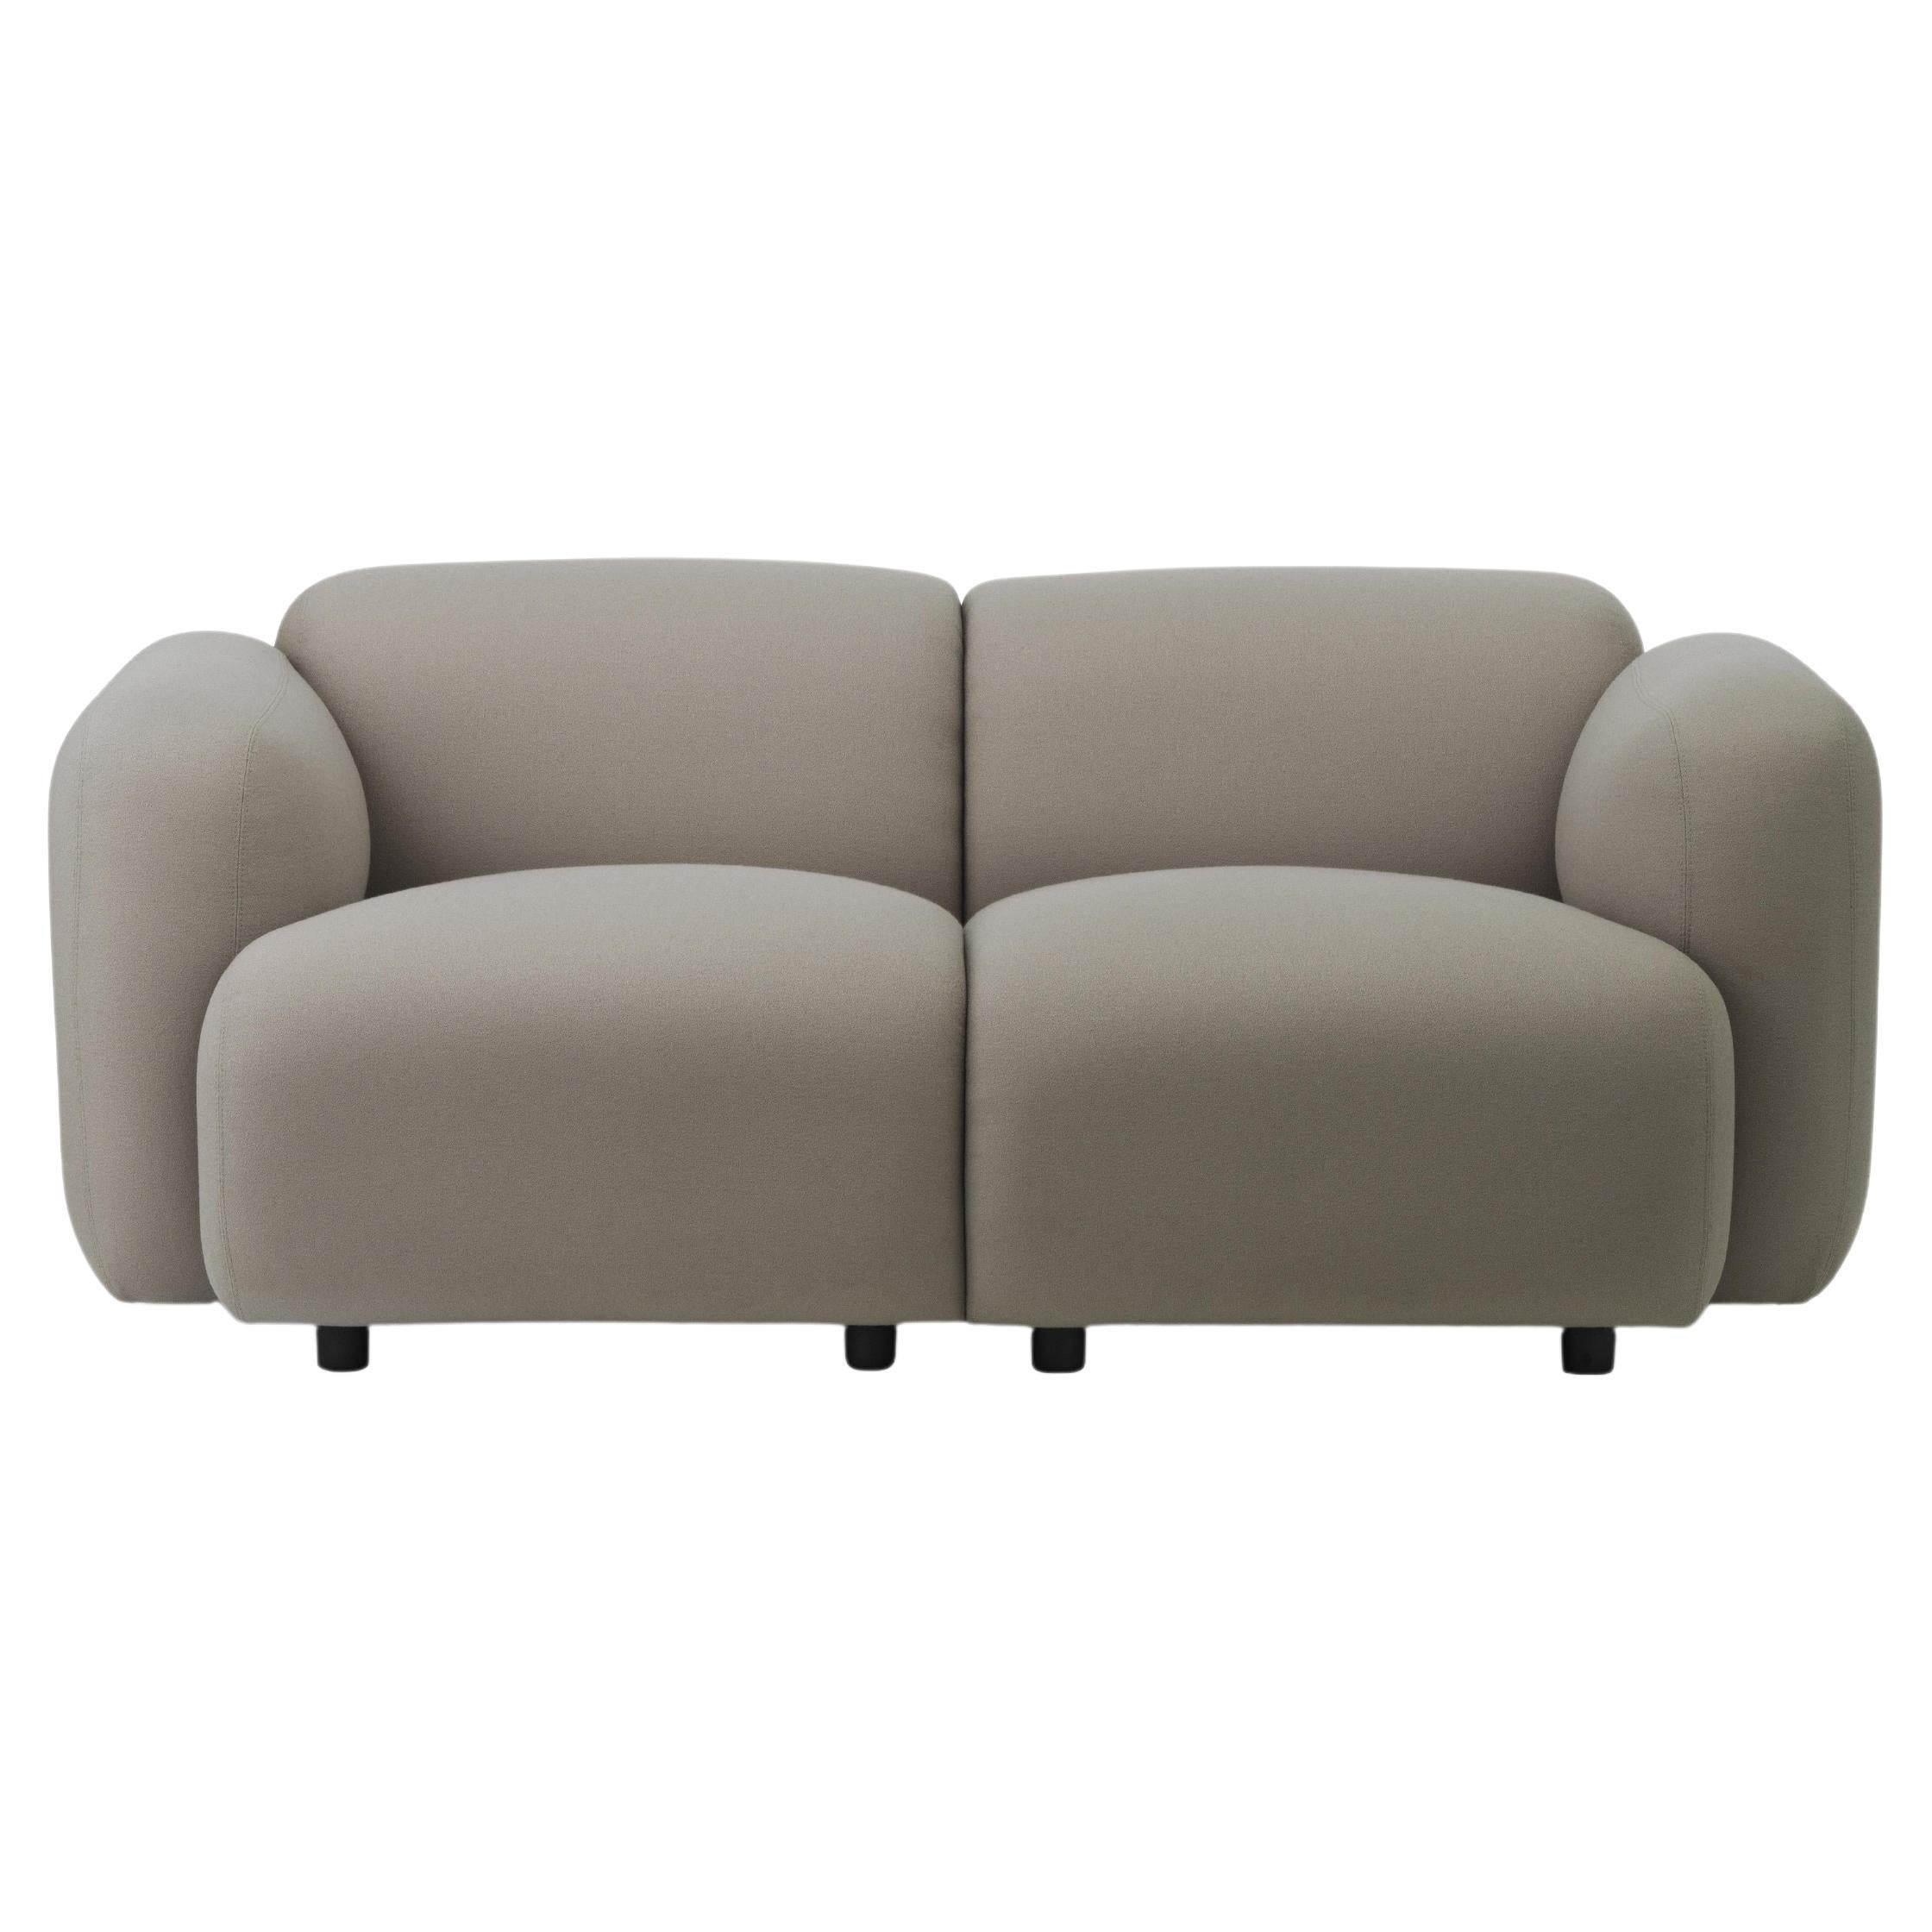 Canapé Swell
Swell est une collection minimaliste de meubles pour le salon, avec un côté ludique et léger. Les silhouettes douces et incurvées donnent aux meubles un aspect accueillant et assurent un confort d'assise fantastique. 
Le nom Swell est